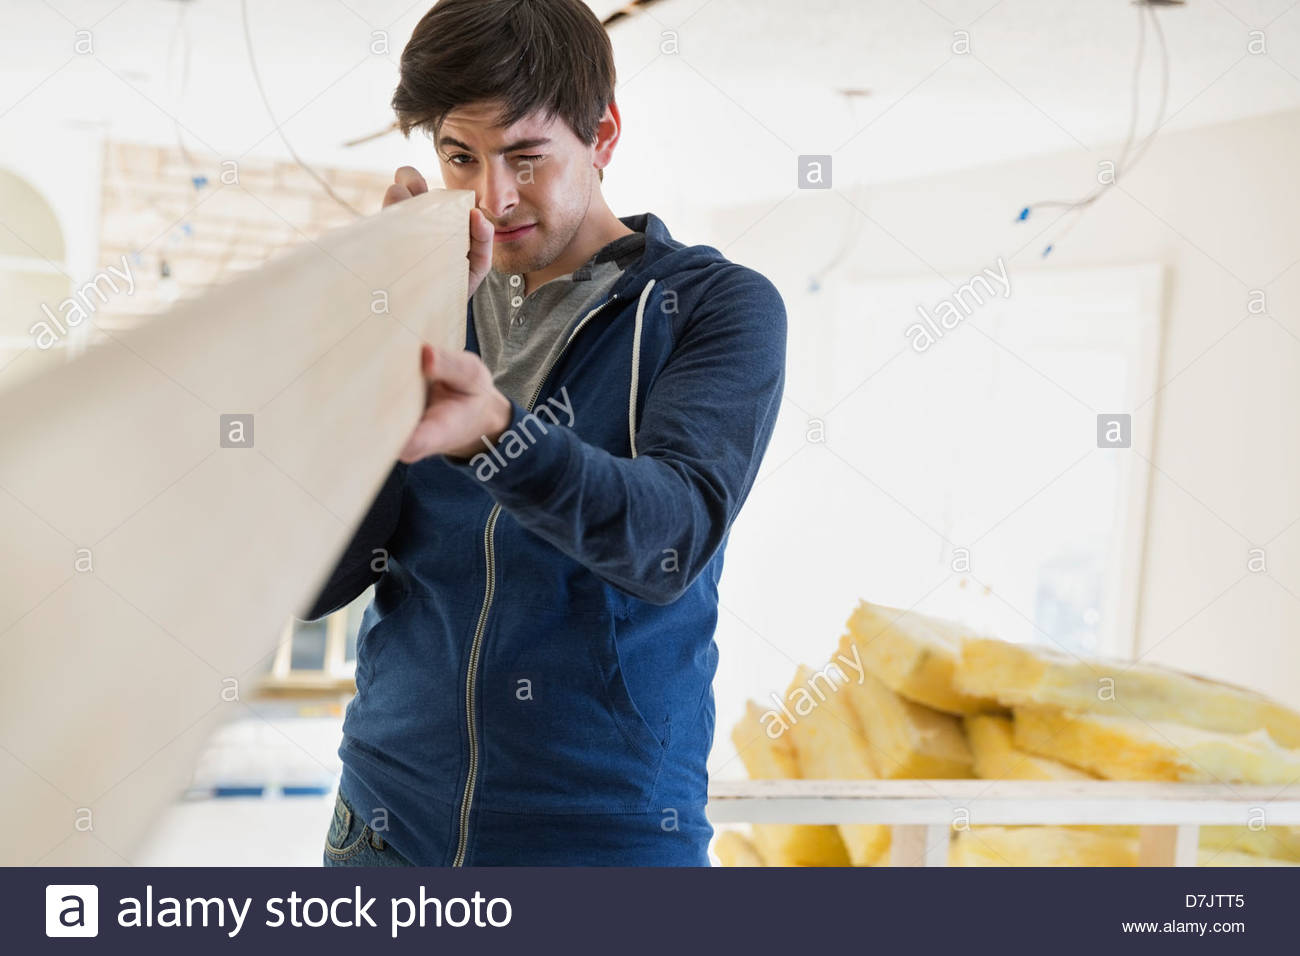 Young man examining lumber at home Stock Photo